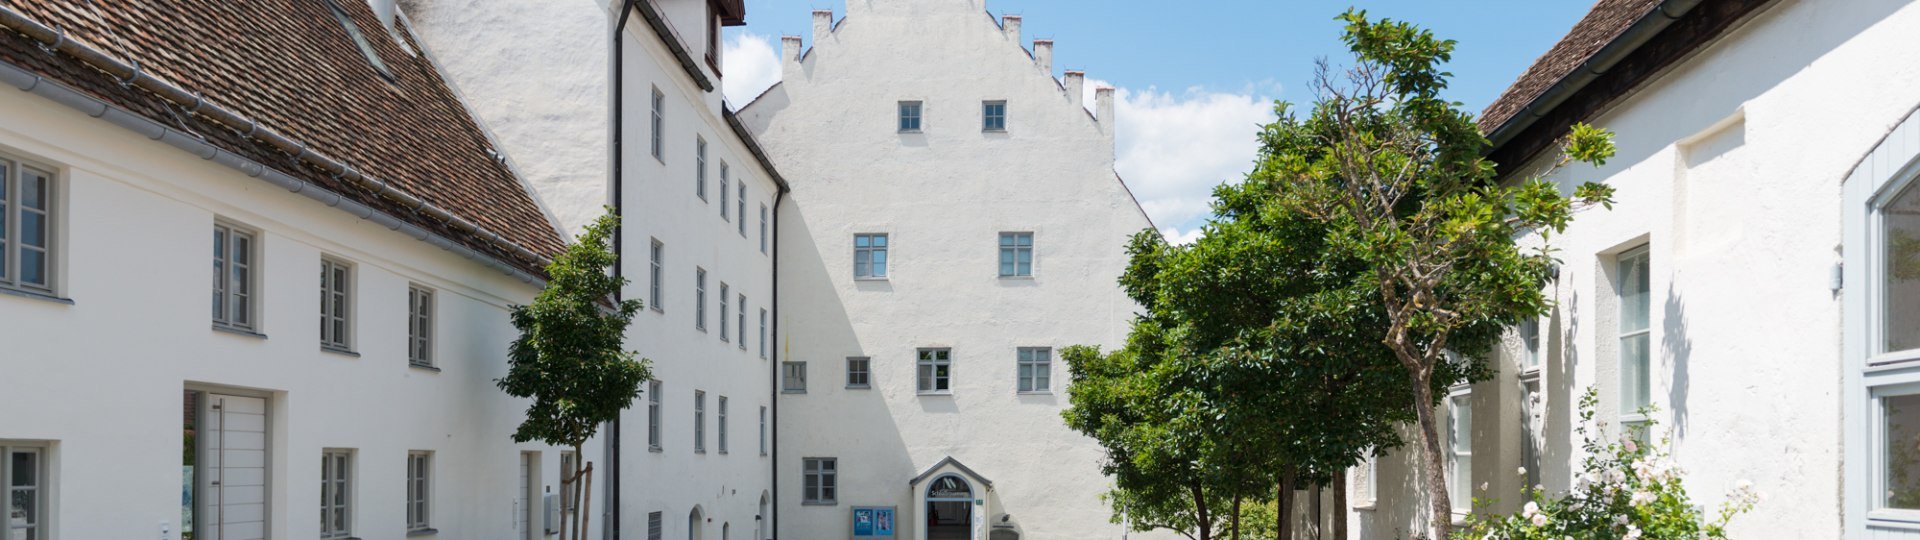 Schlossmuseum, © Schloßhof - Rechte Schlossmuseum